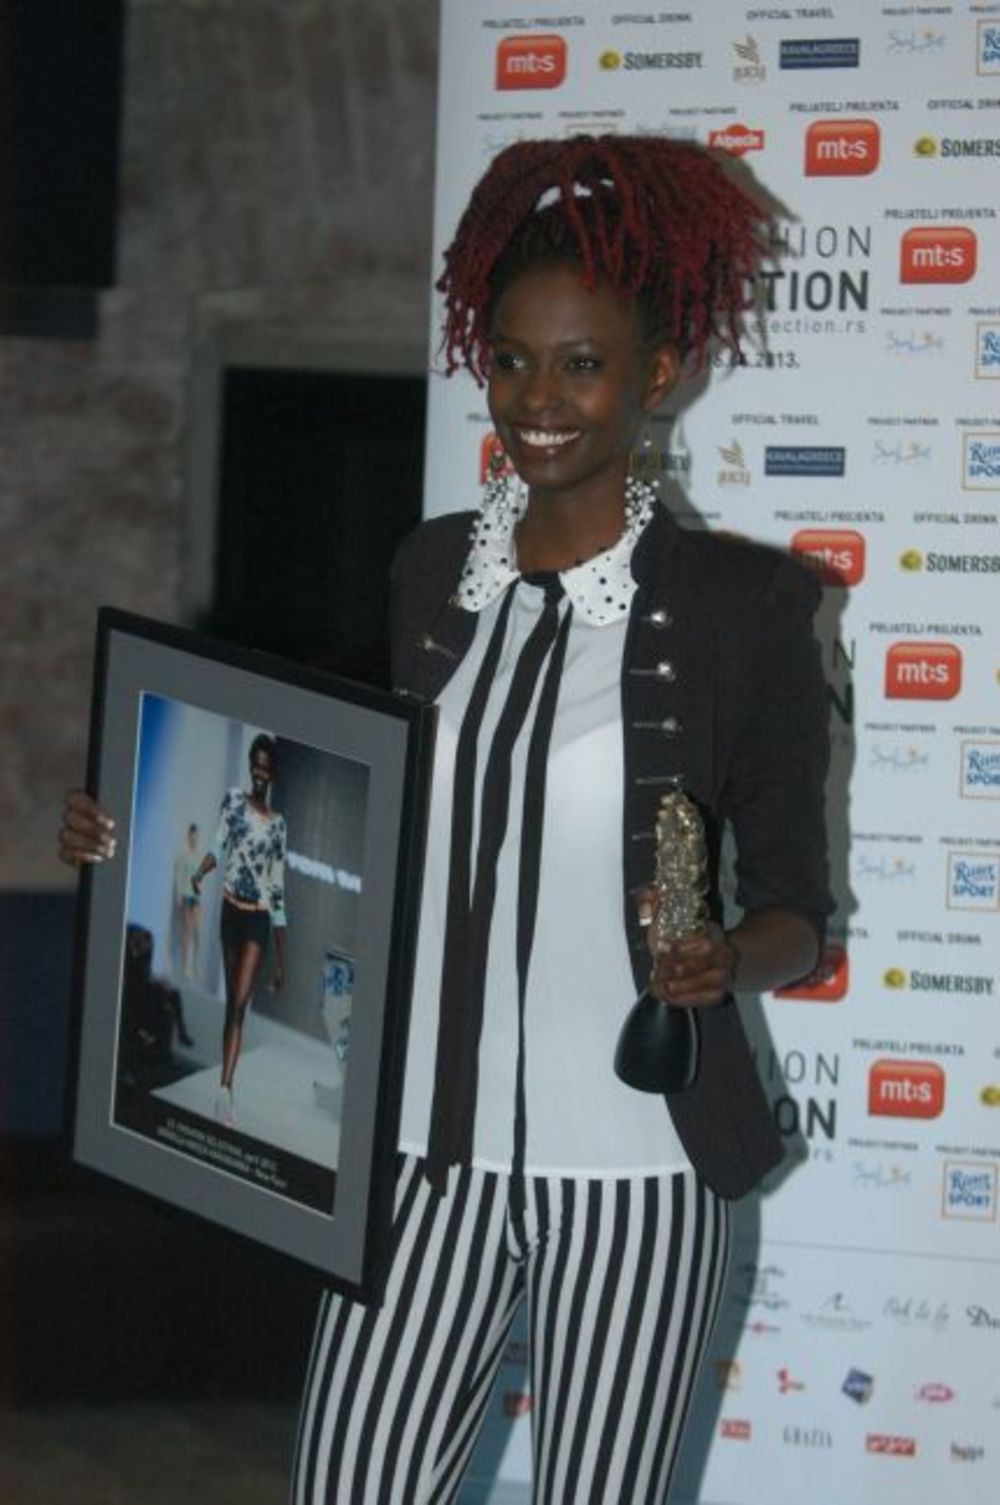 U klubu Krug održana je dodela nagrada 22. Fashion Selectiona. Nagrade, o kojima je odlučivao novinarski žiri, dodeljene su u čak 11 kategorija najboljima na upravo završenom 22. Fashion Selectionu.